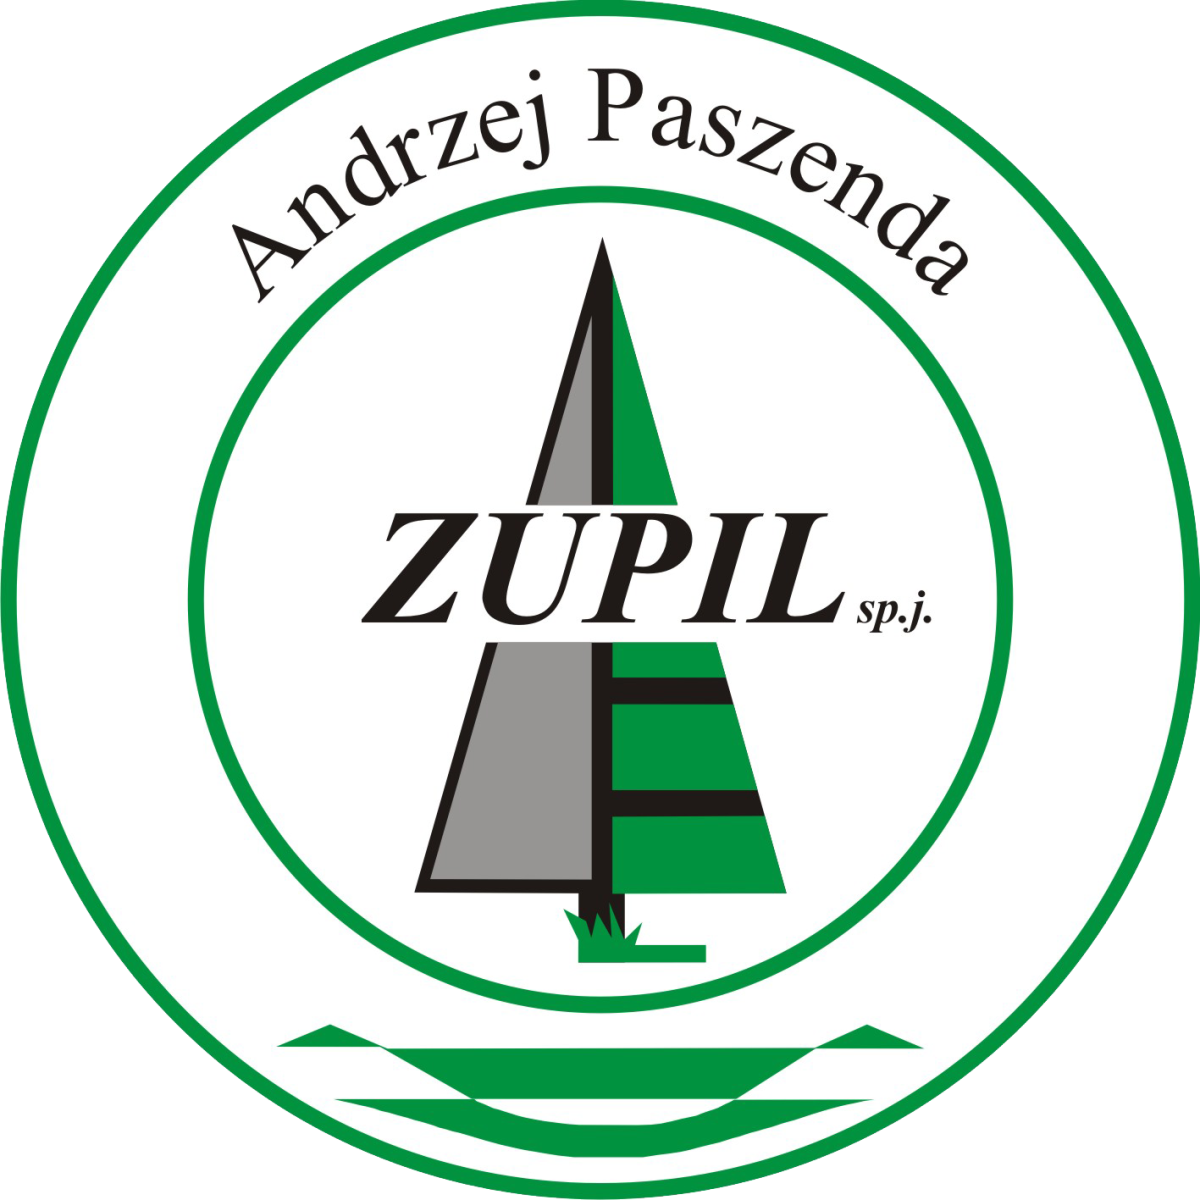 Andrzej Paszenda ZUPIL sp.j.